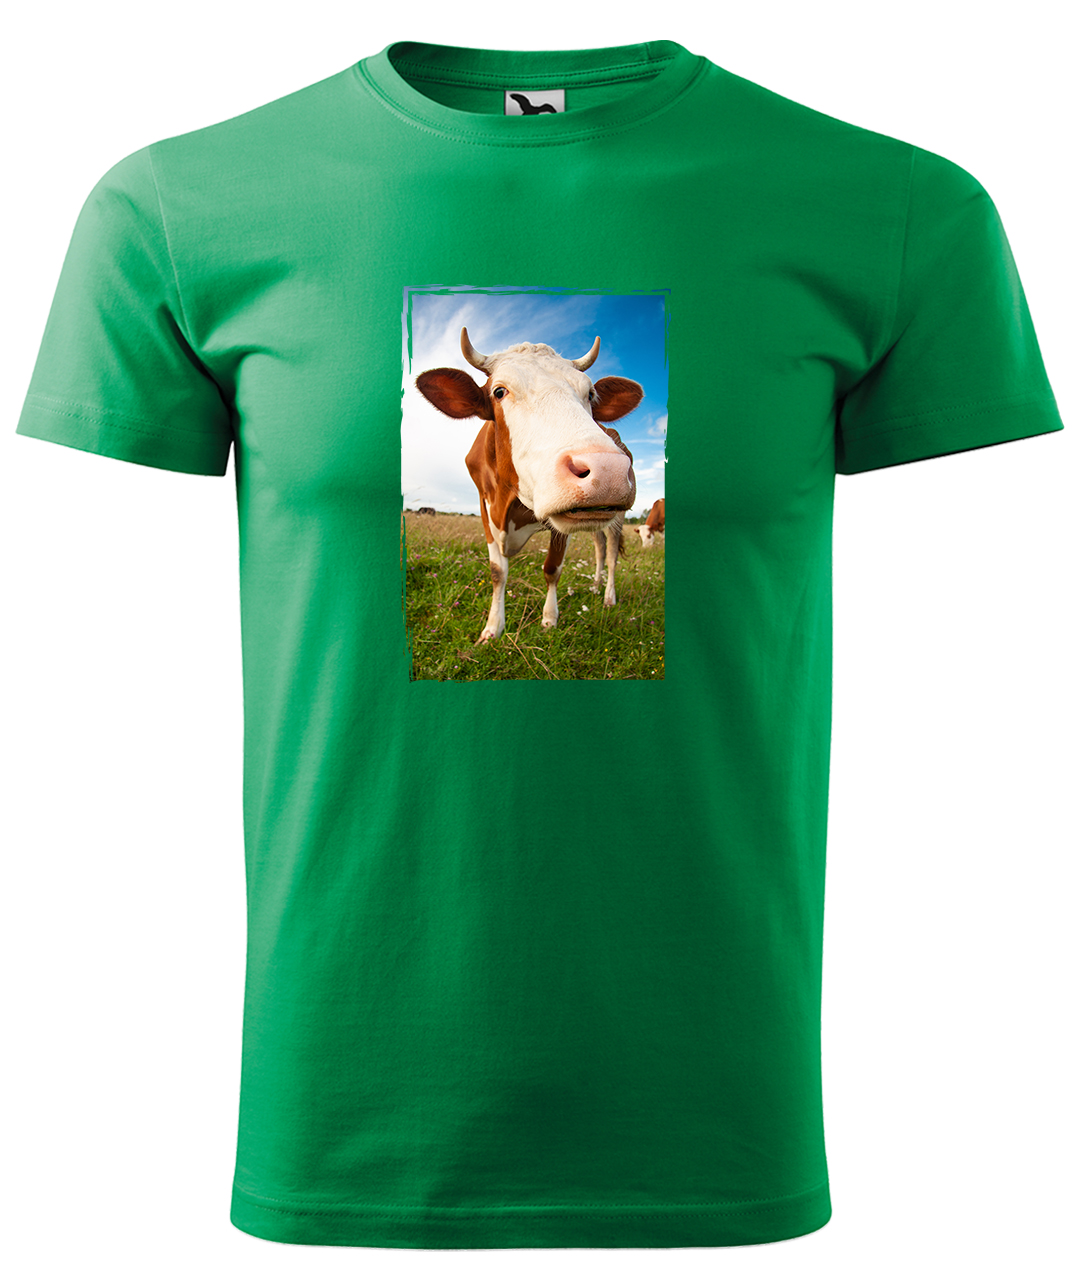 Dětské tričko s krávou - Na pastvě Velikost: 8 let / 134 cm, Barva: Středně zelená (16), Délka rukávu: Krátký rukáv